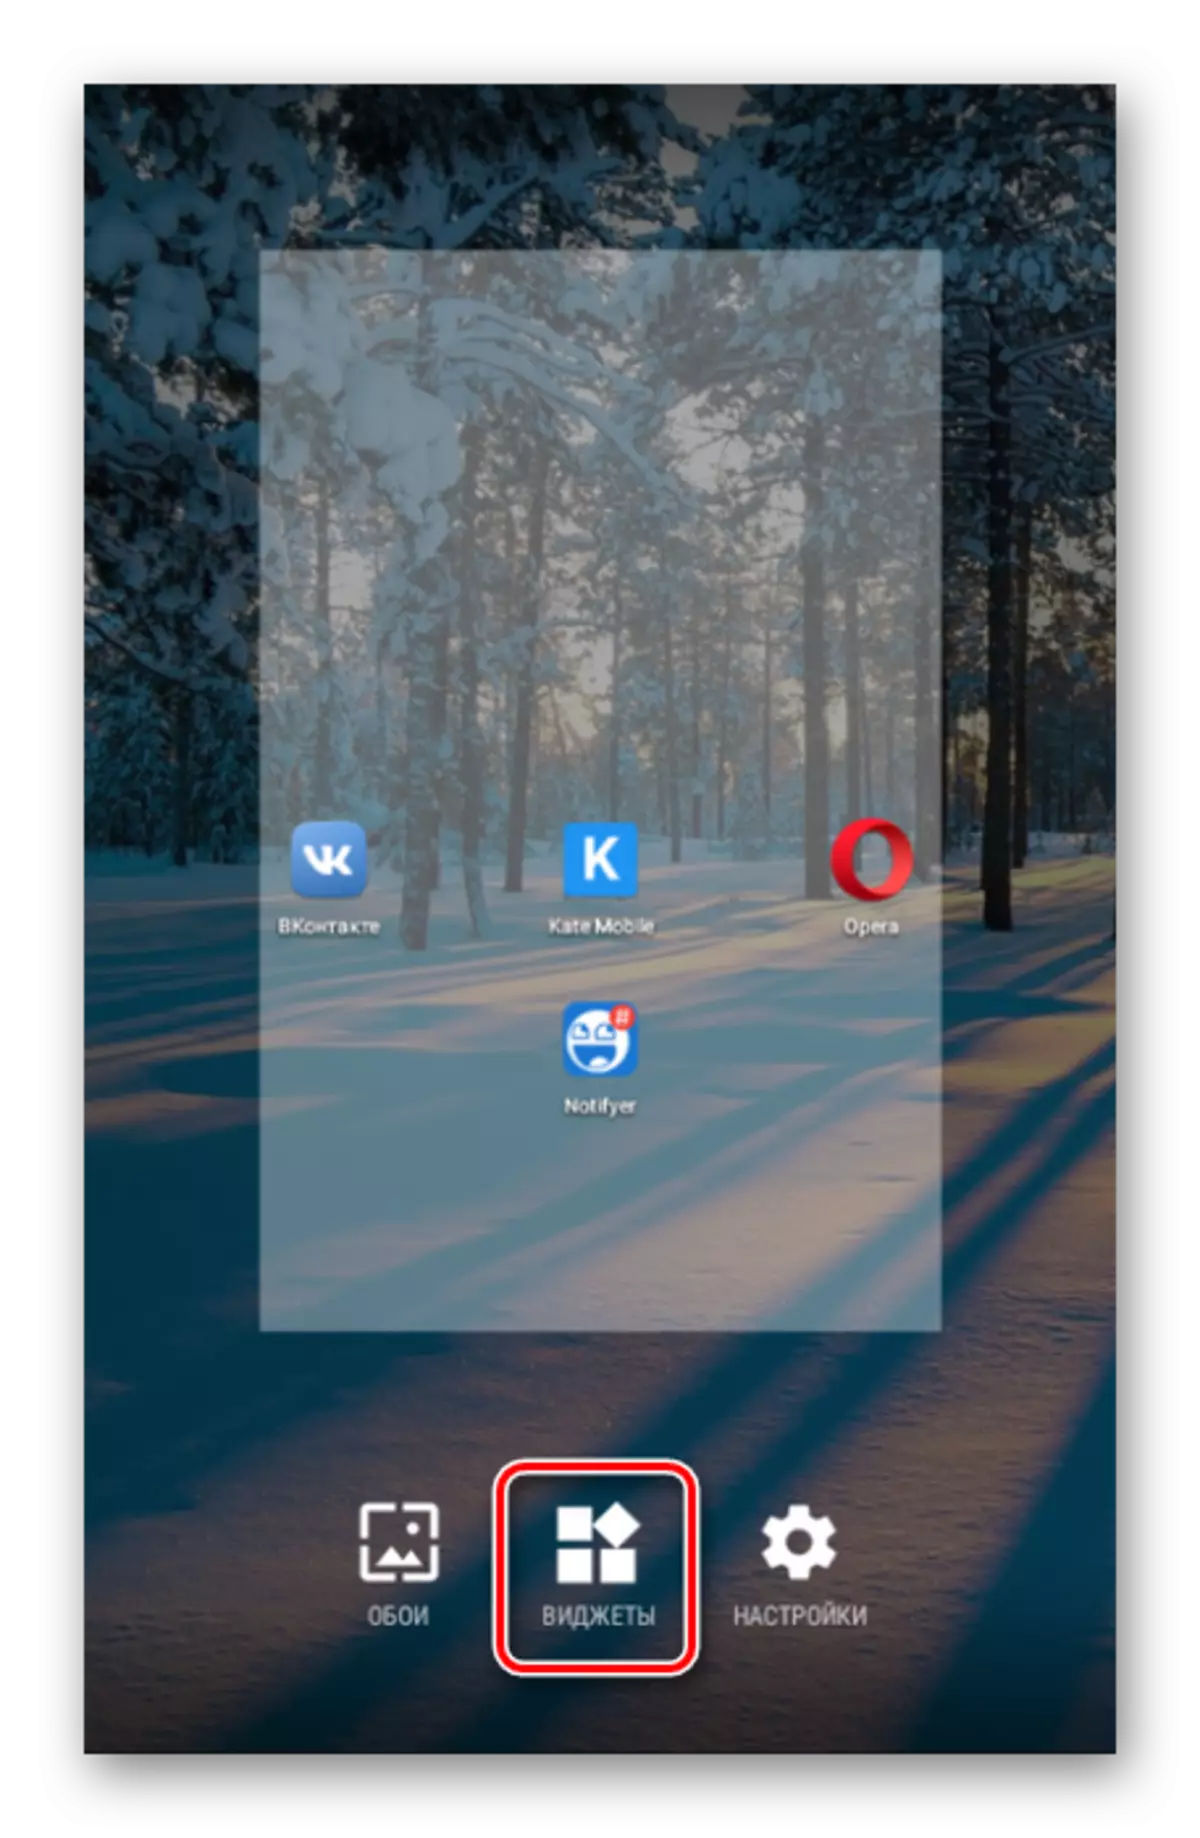 Gehen Sie zu den Fenster-Widgets auf Android